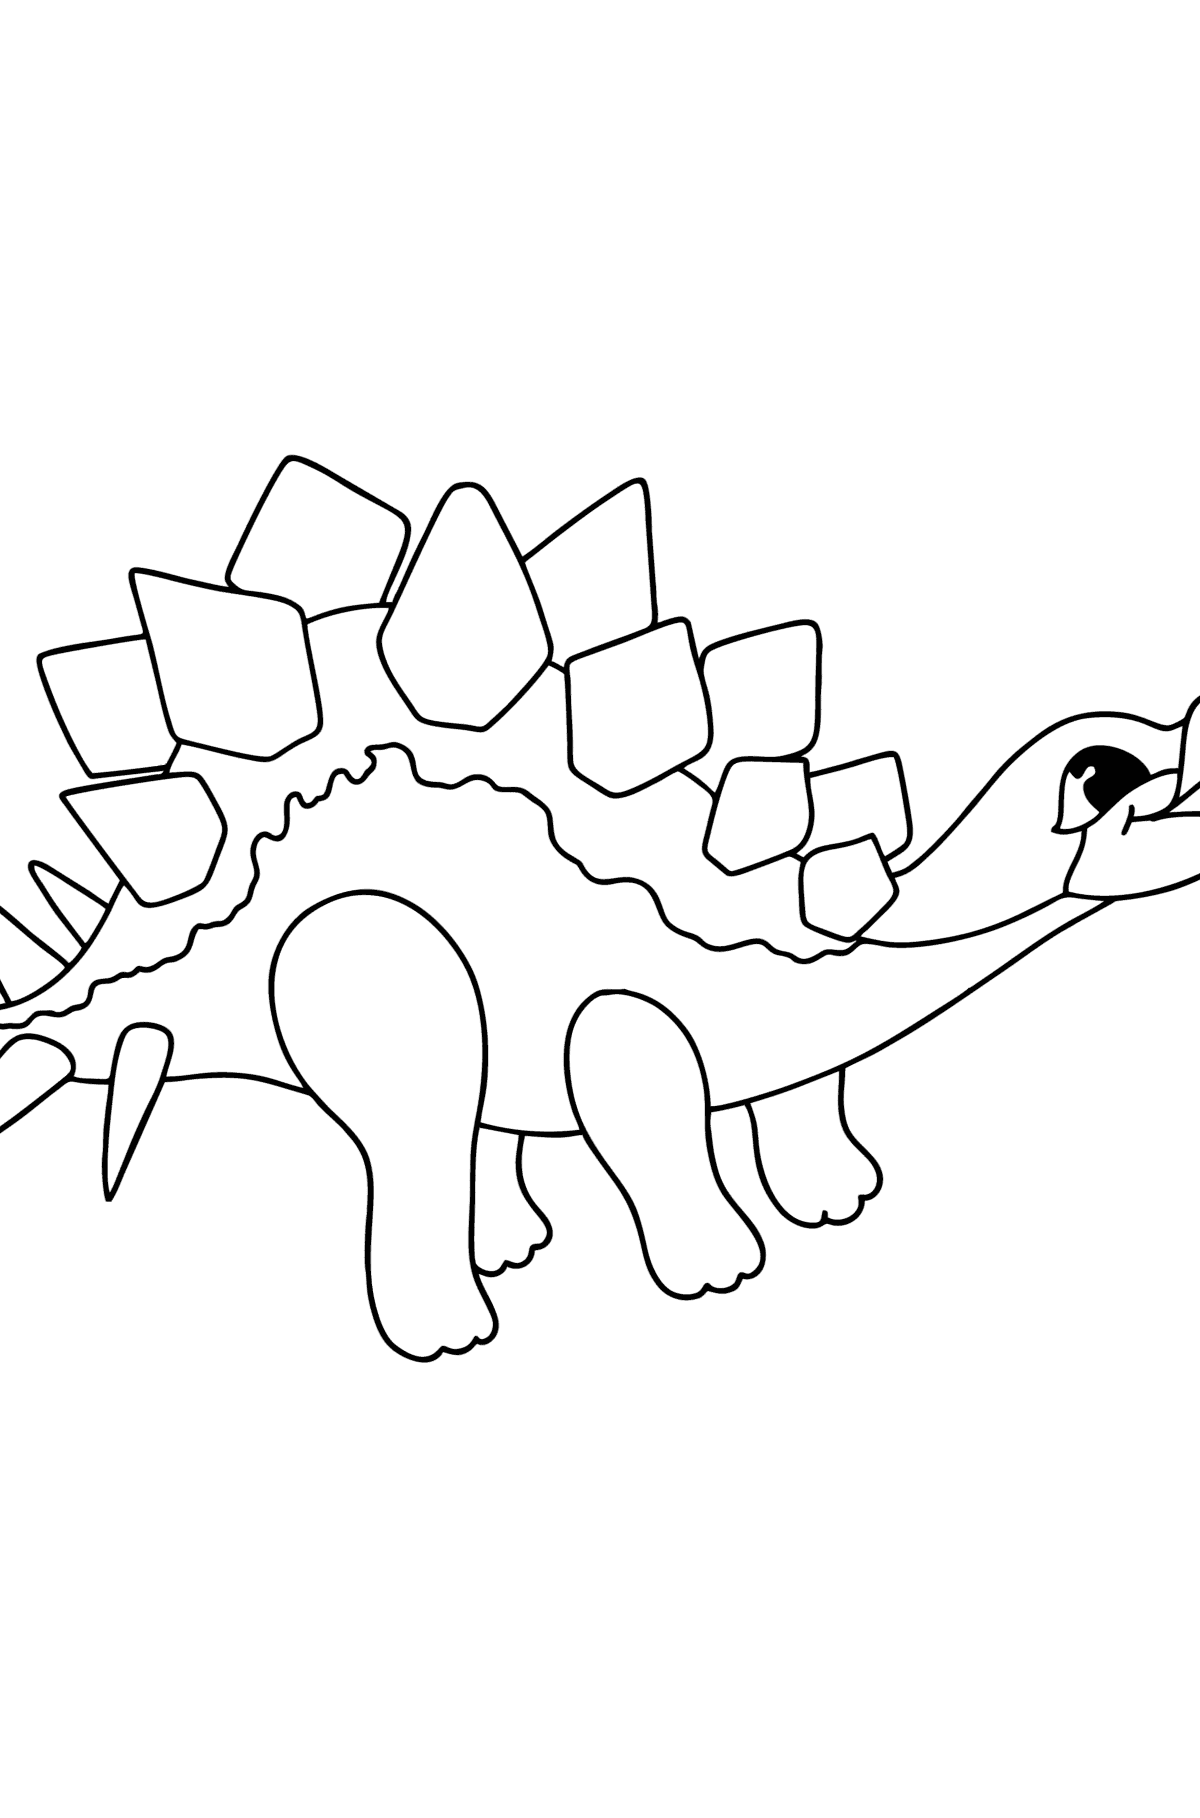 Desen de colorat stegozaur - Desene de colorat pentru copii